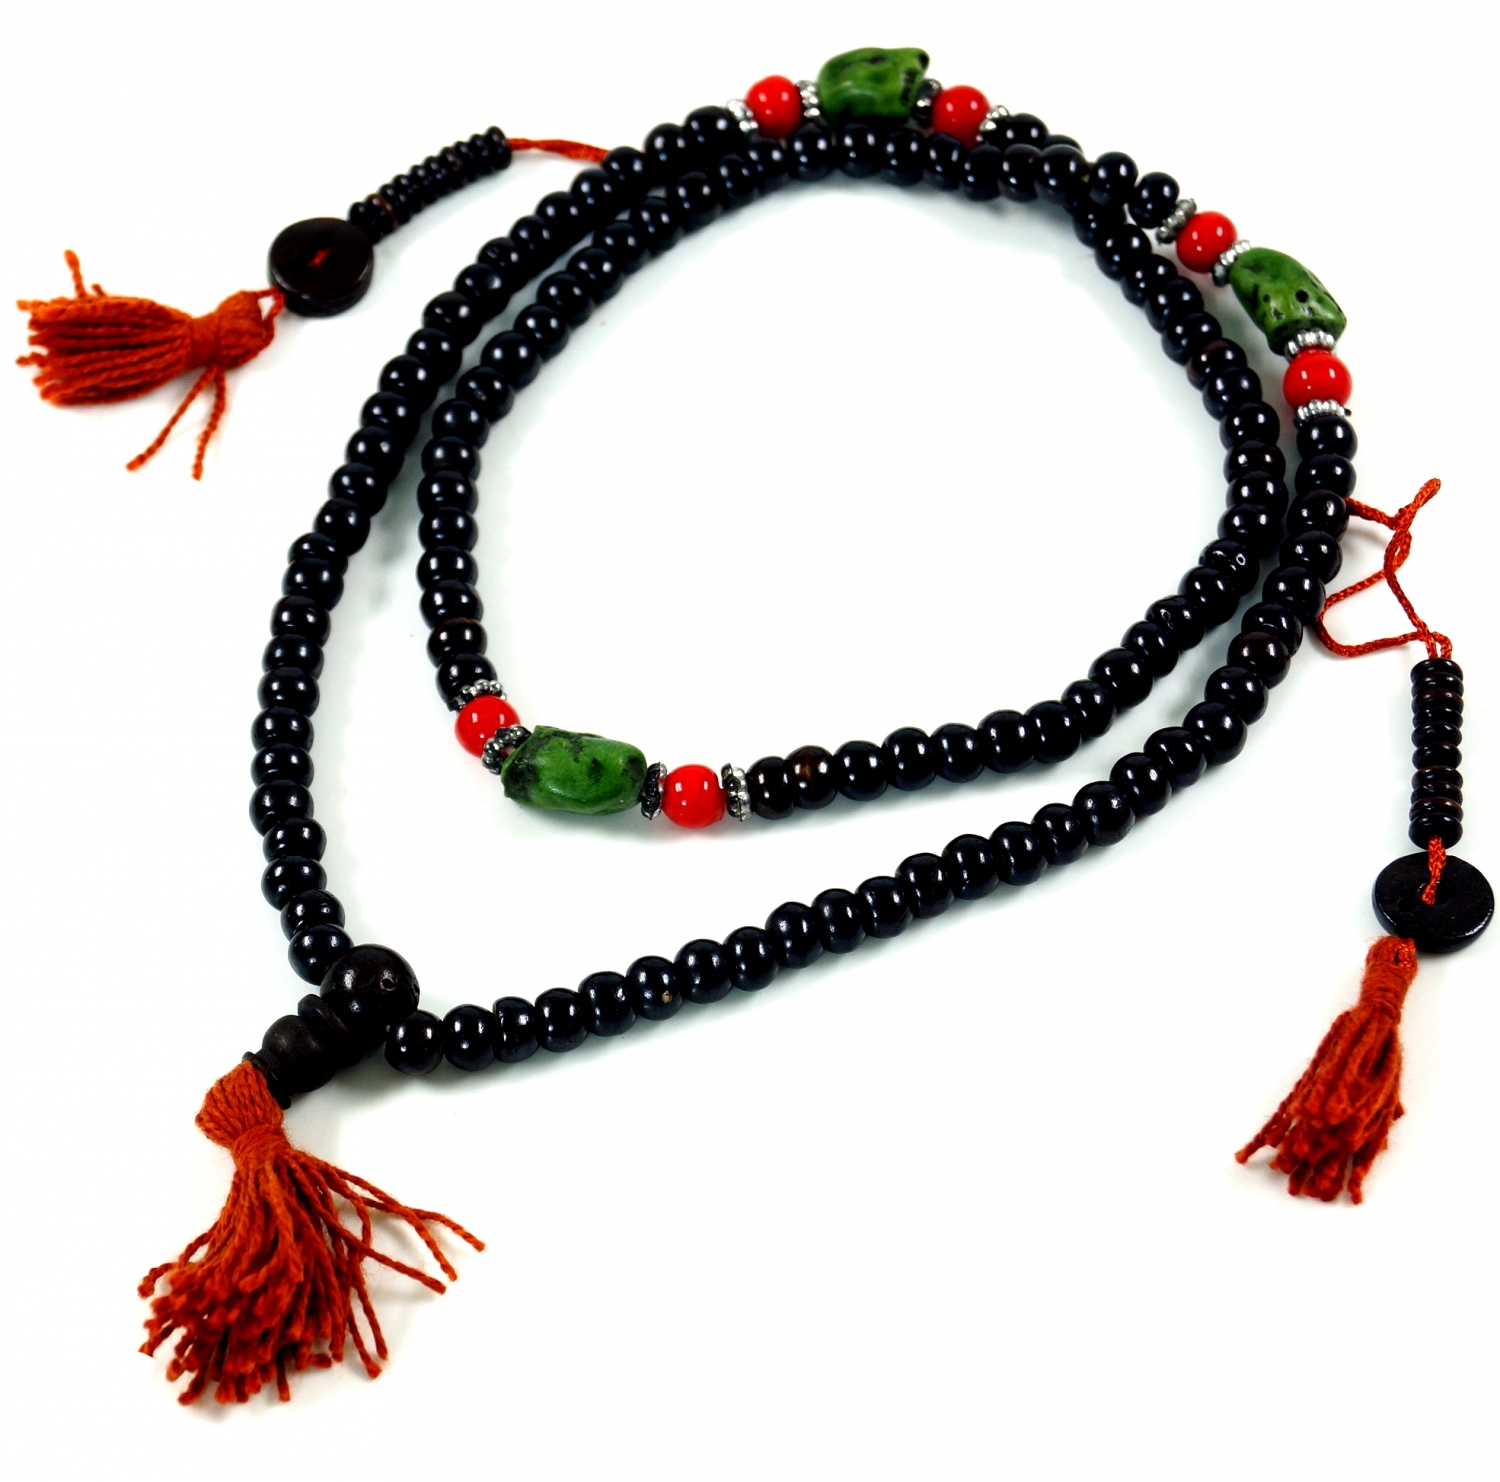 Ethno Kette Buddhistische Gebetskette Naturmaterialien Holz Perlen schwarz NEU! 